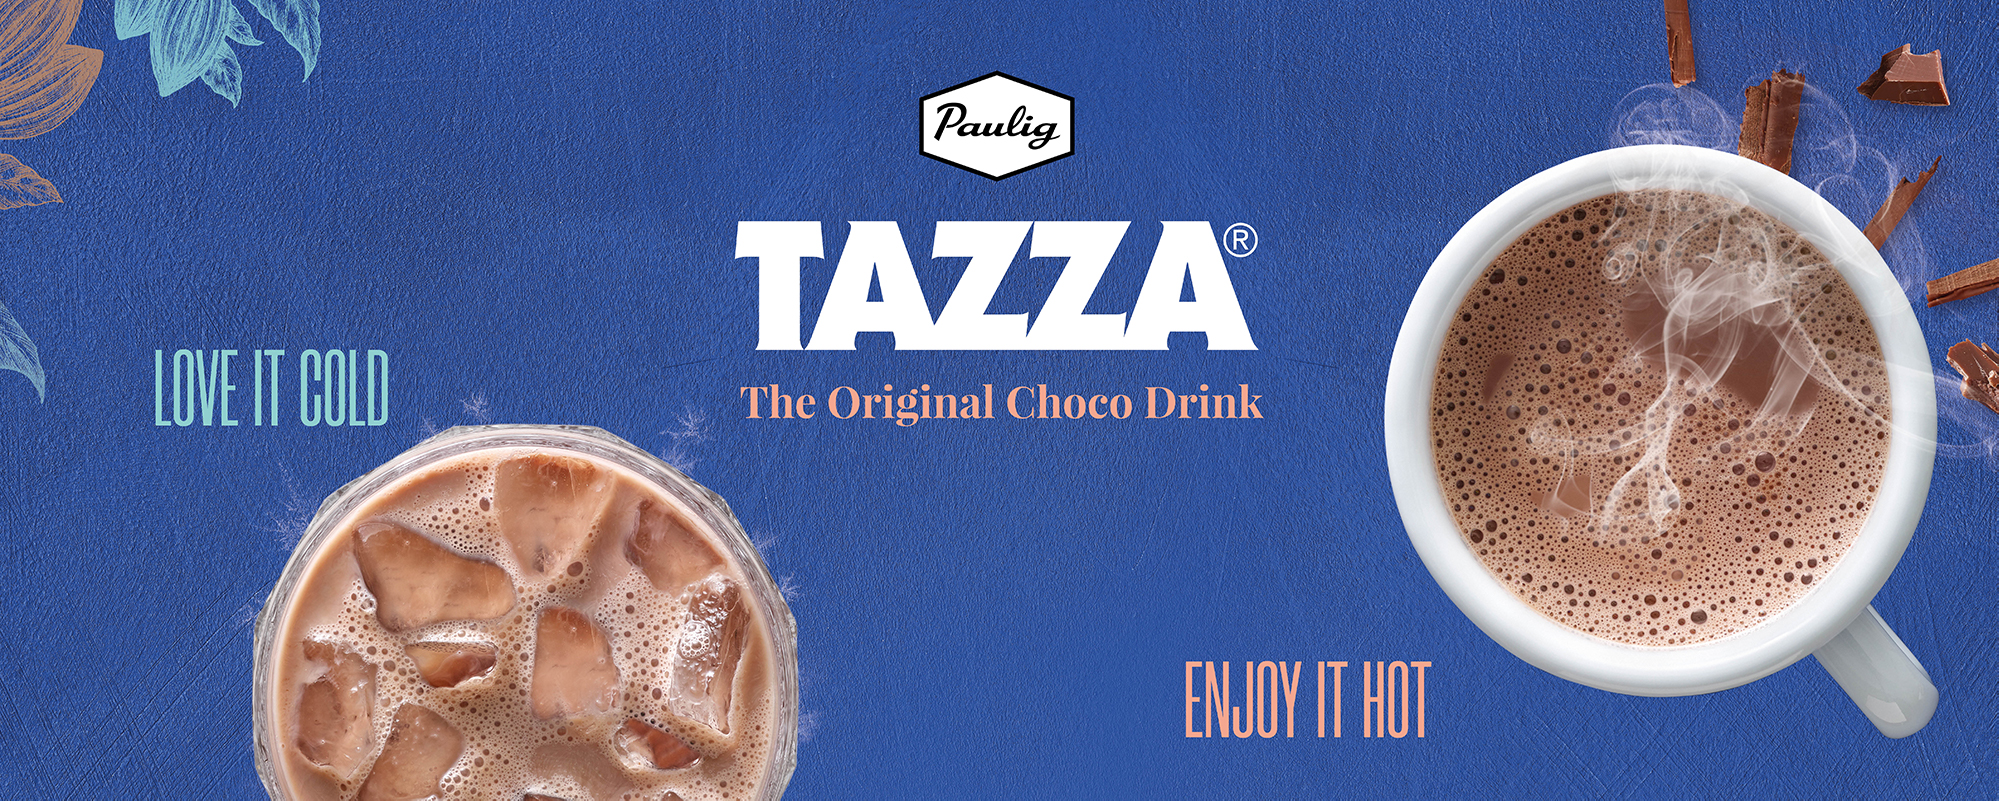 tazza-teksti sinisellä taustalla jossa on kaksi mukia kaakaota